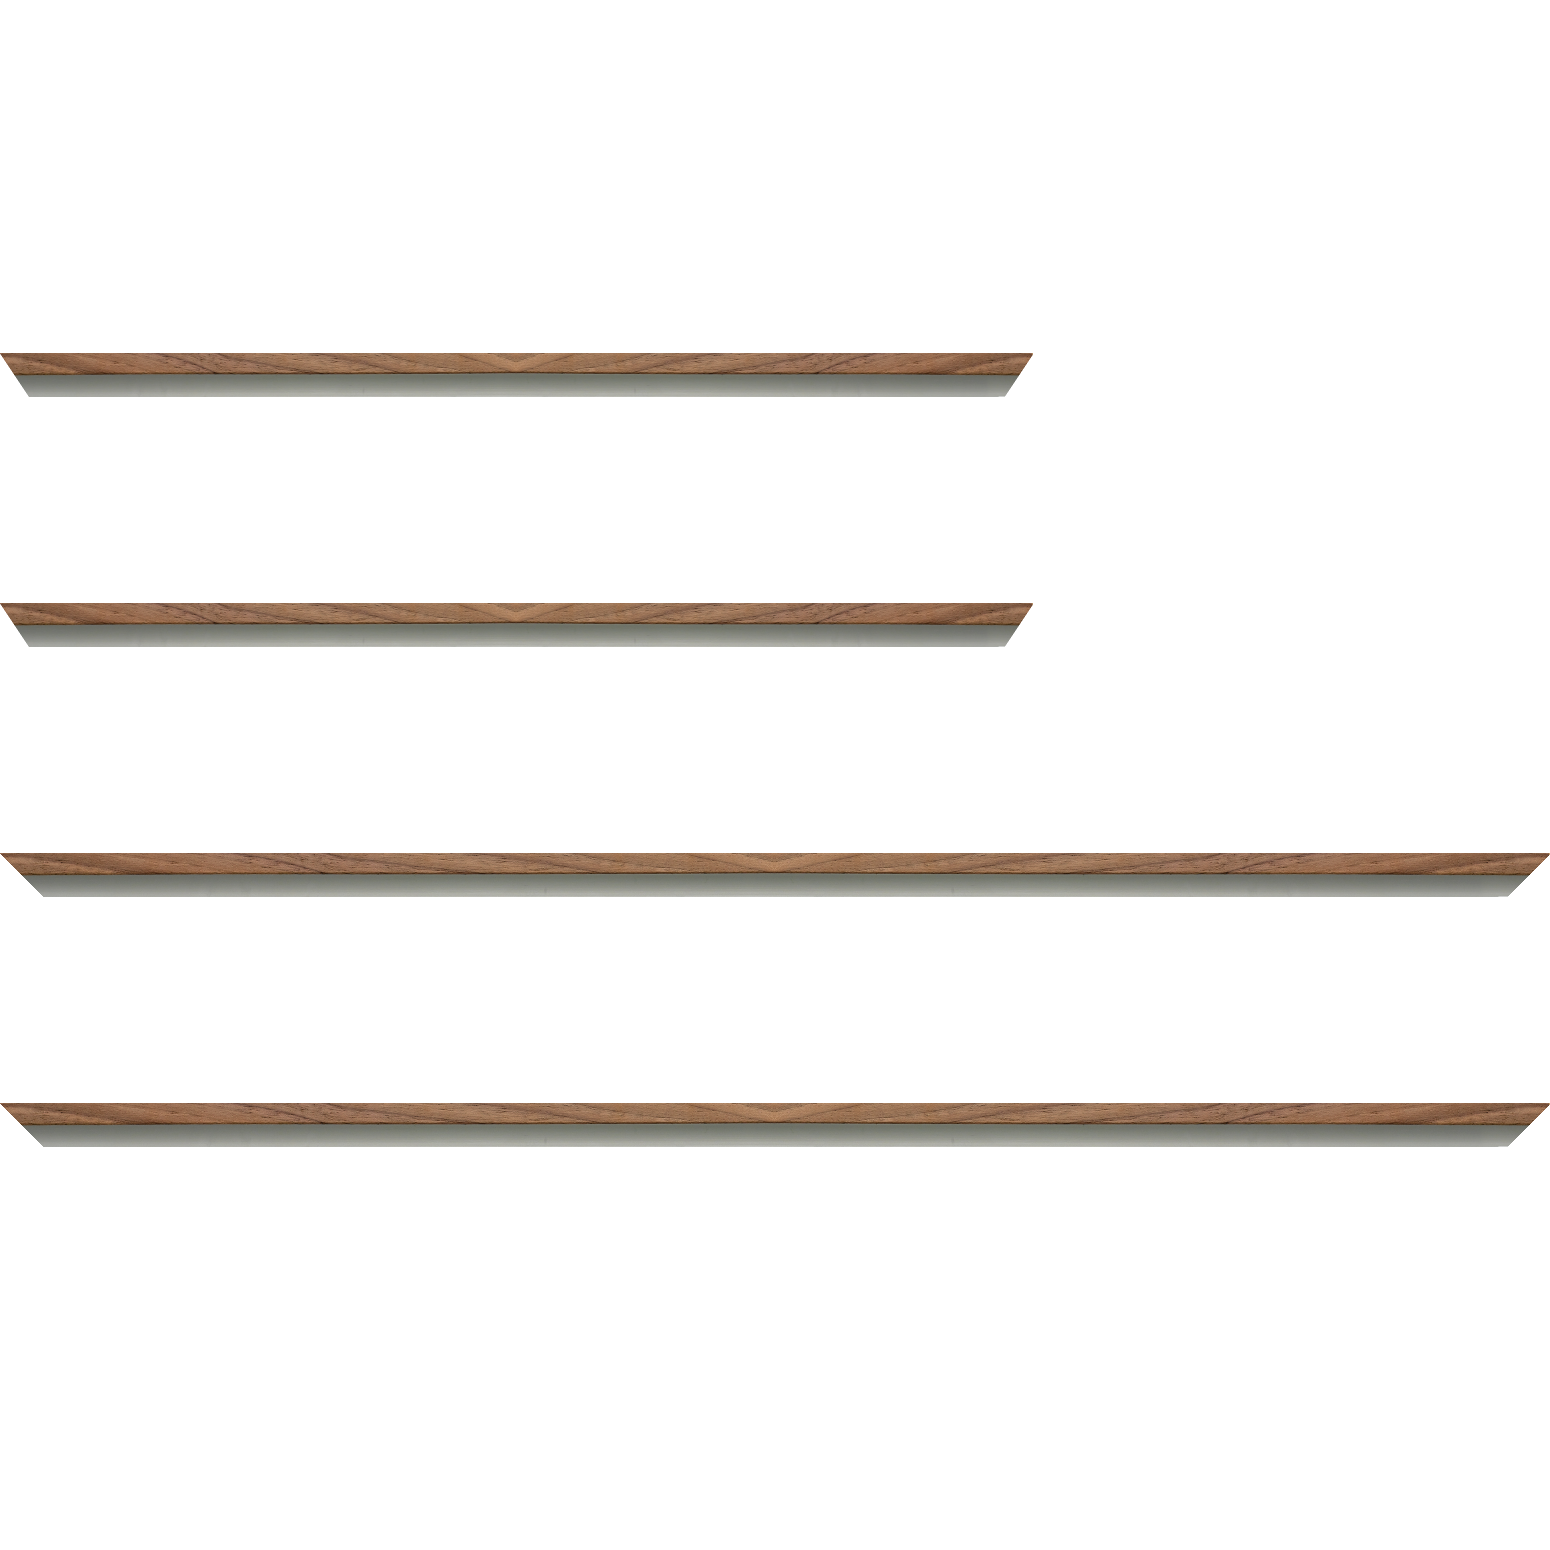 Baguette aluminium profil plat largeur 8mm, placage véritable noyer ,(le sujet qui sera glissé dans le cadre sera en retrait de 6mm de la face du cadre assurant un effet très contemporain) mise en place du sujet rapide et simple: assemblage du cadre par double équerre à vis (livré avec le système d'accrochage qui se glisse dans le profilé) encadrement non assemblé,  livré avec son sachet d'accessoires - 30x90